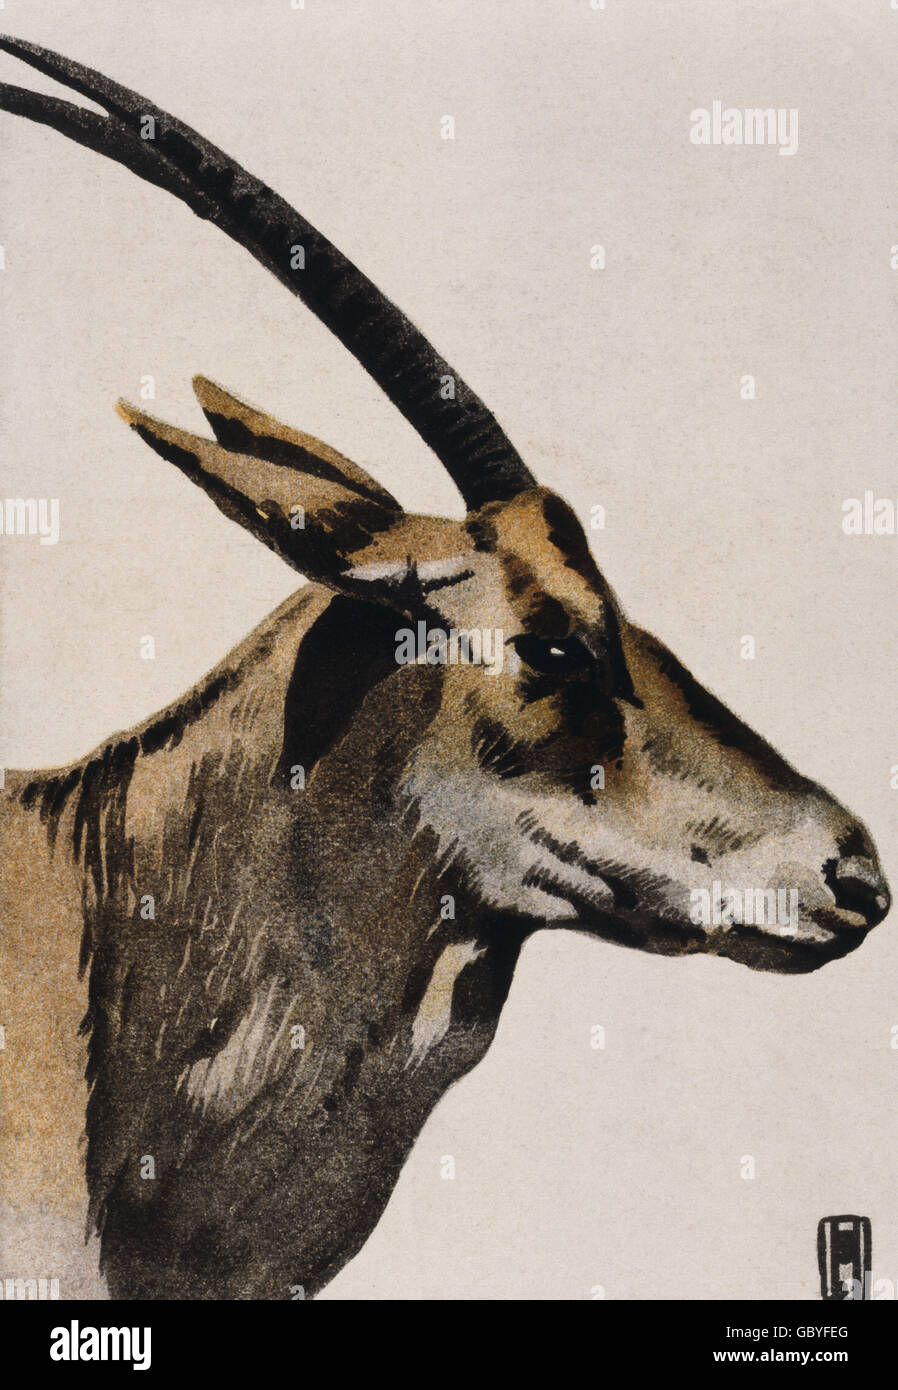 zoologie, Antilope, Illustration auf Werbeplakat für den Tiergarten Hellabrunn, München, gemalt im Stil Hohlweins, um 1910, Zusatz-Rechteklärung-nicht vorhanden Stockfoto